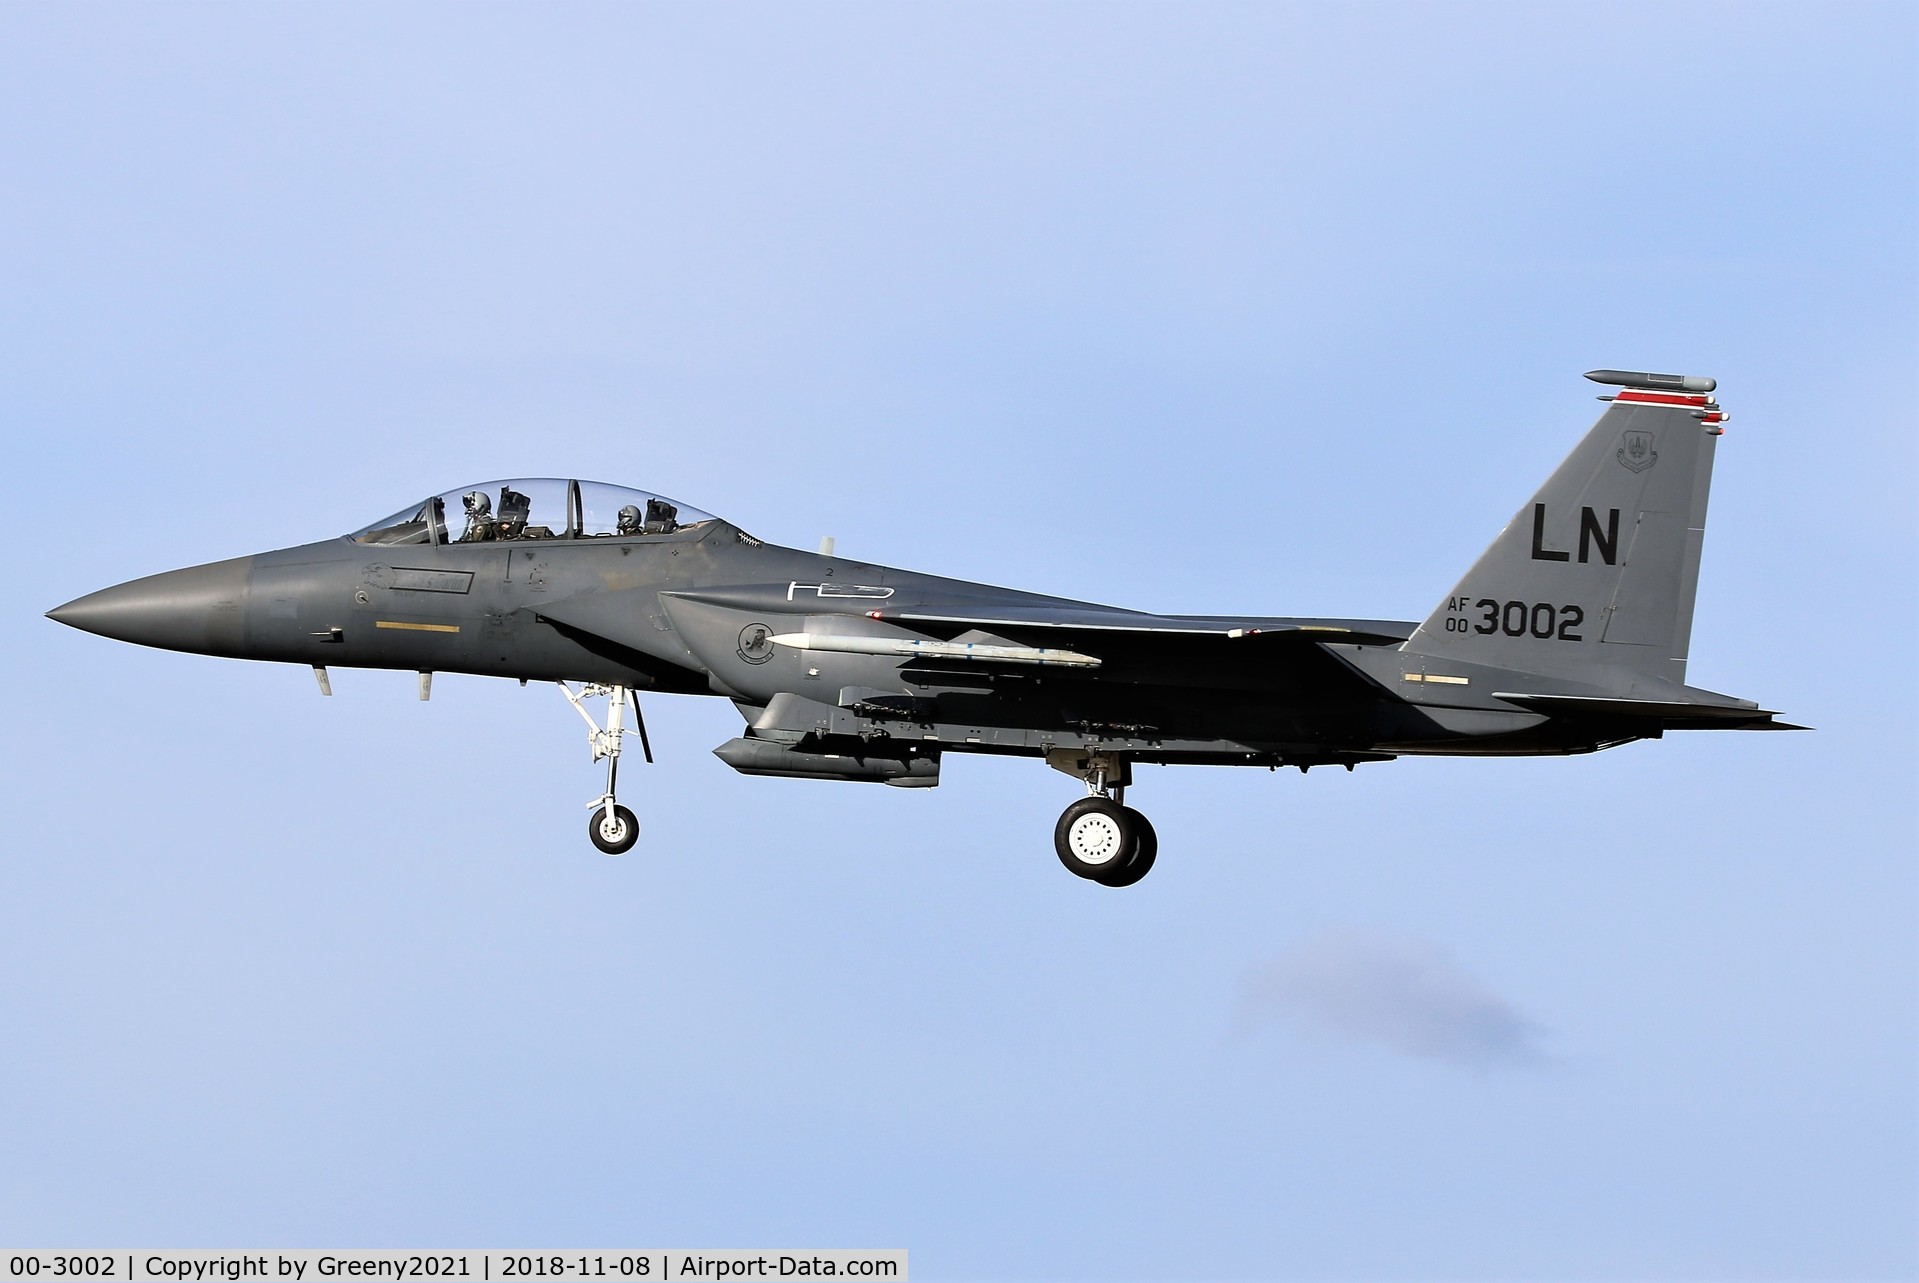 00-3002, 2000 McDonnell Douglas F-15E Strike Eagle C/N 1368/E229, Lakenheath